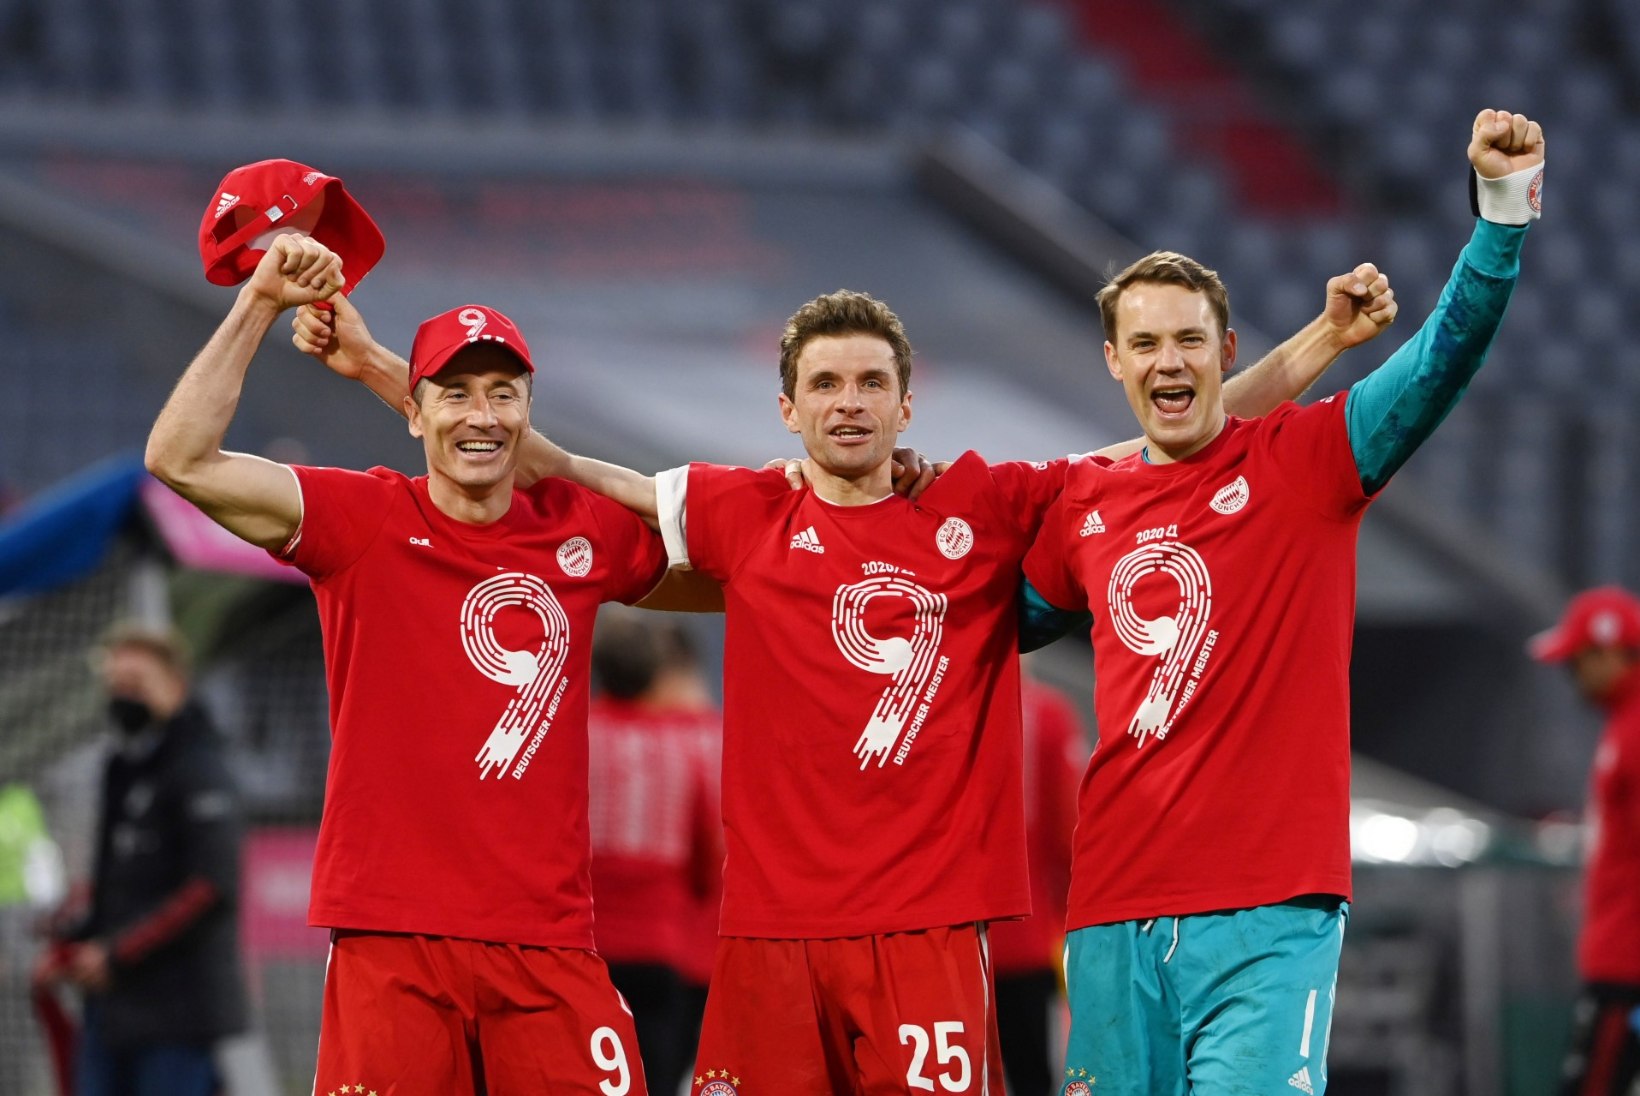 Bayern tähistas järjekordset tiitlit meeleoluka väravapeoga